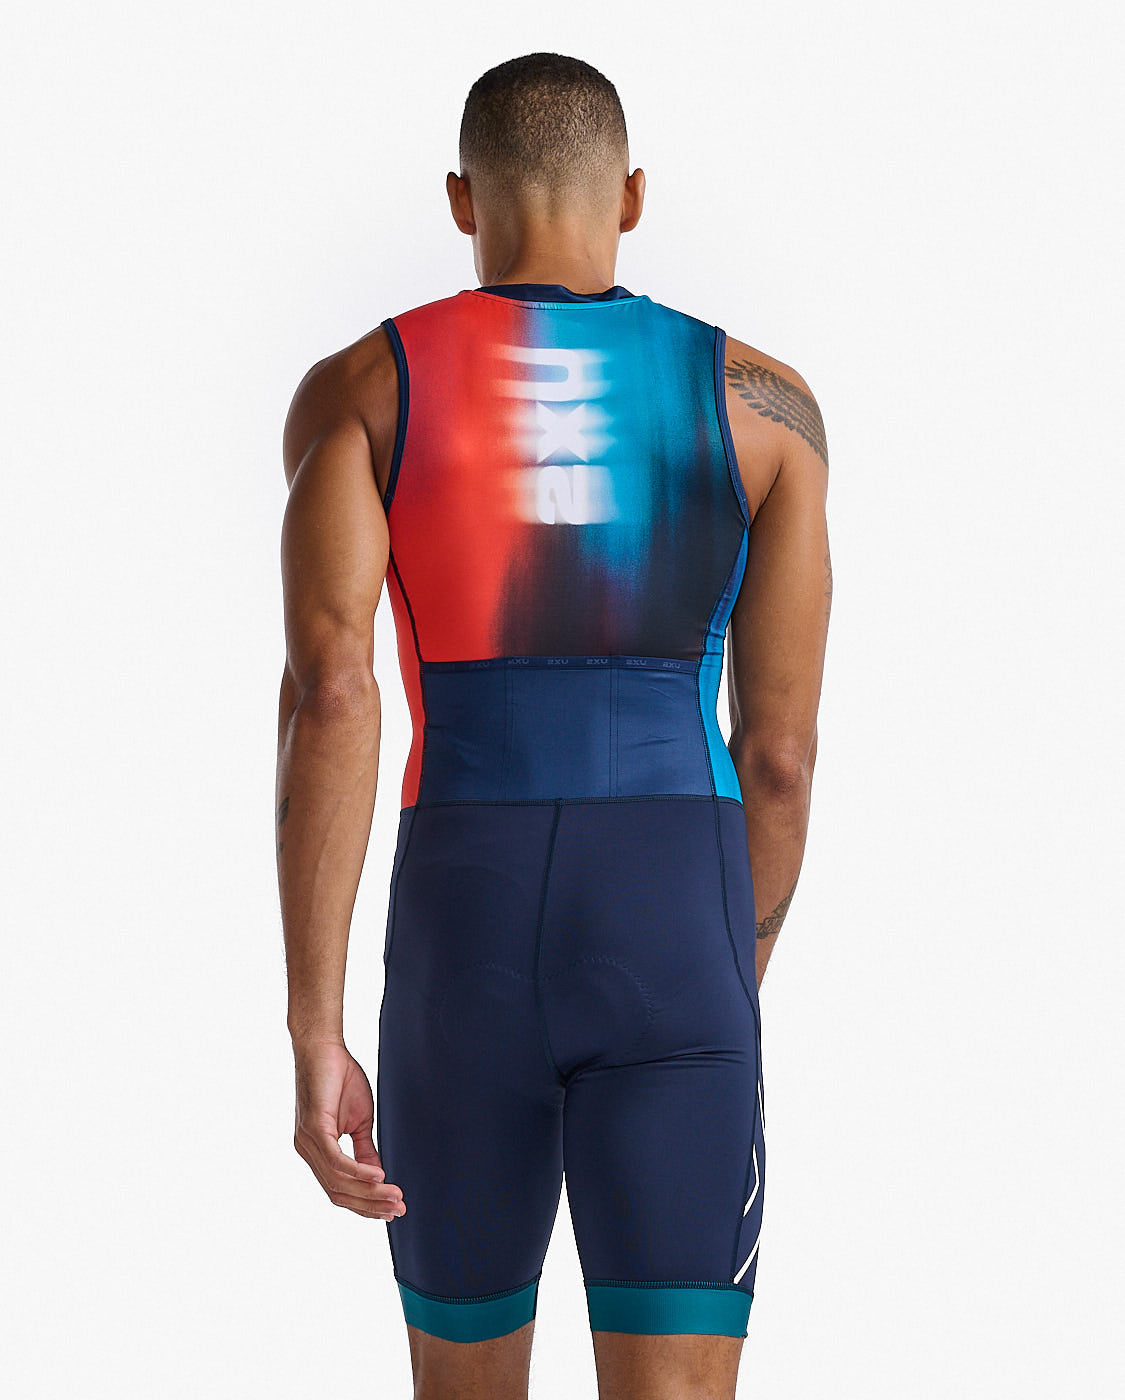 Compression Clothing for Gym, Running, & Triathlon | 2XU – 2XU US